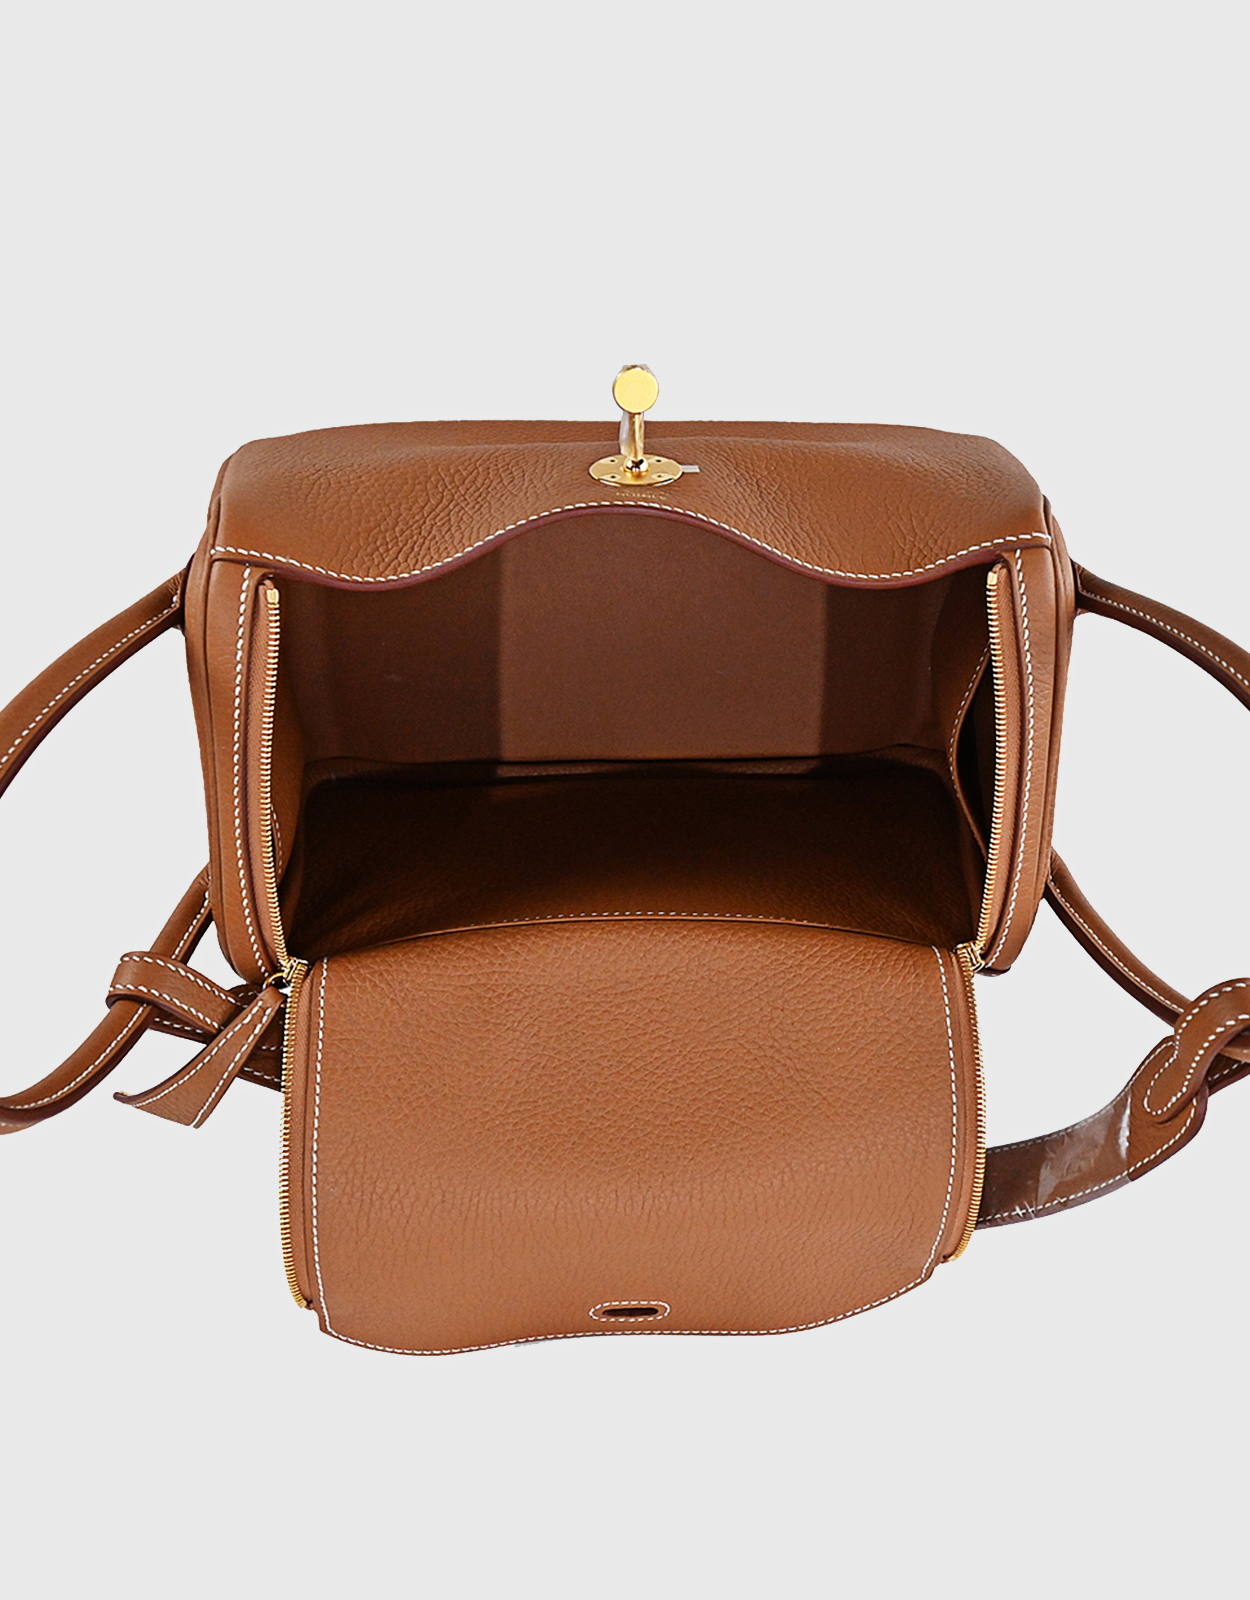 HERMÈS Paris Gold taurillon leather bag, model market …